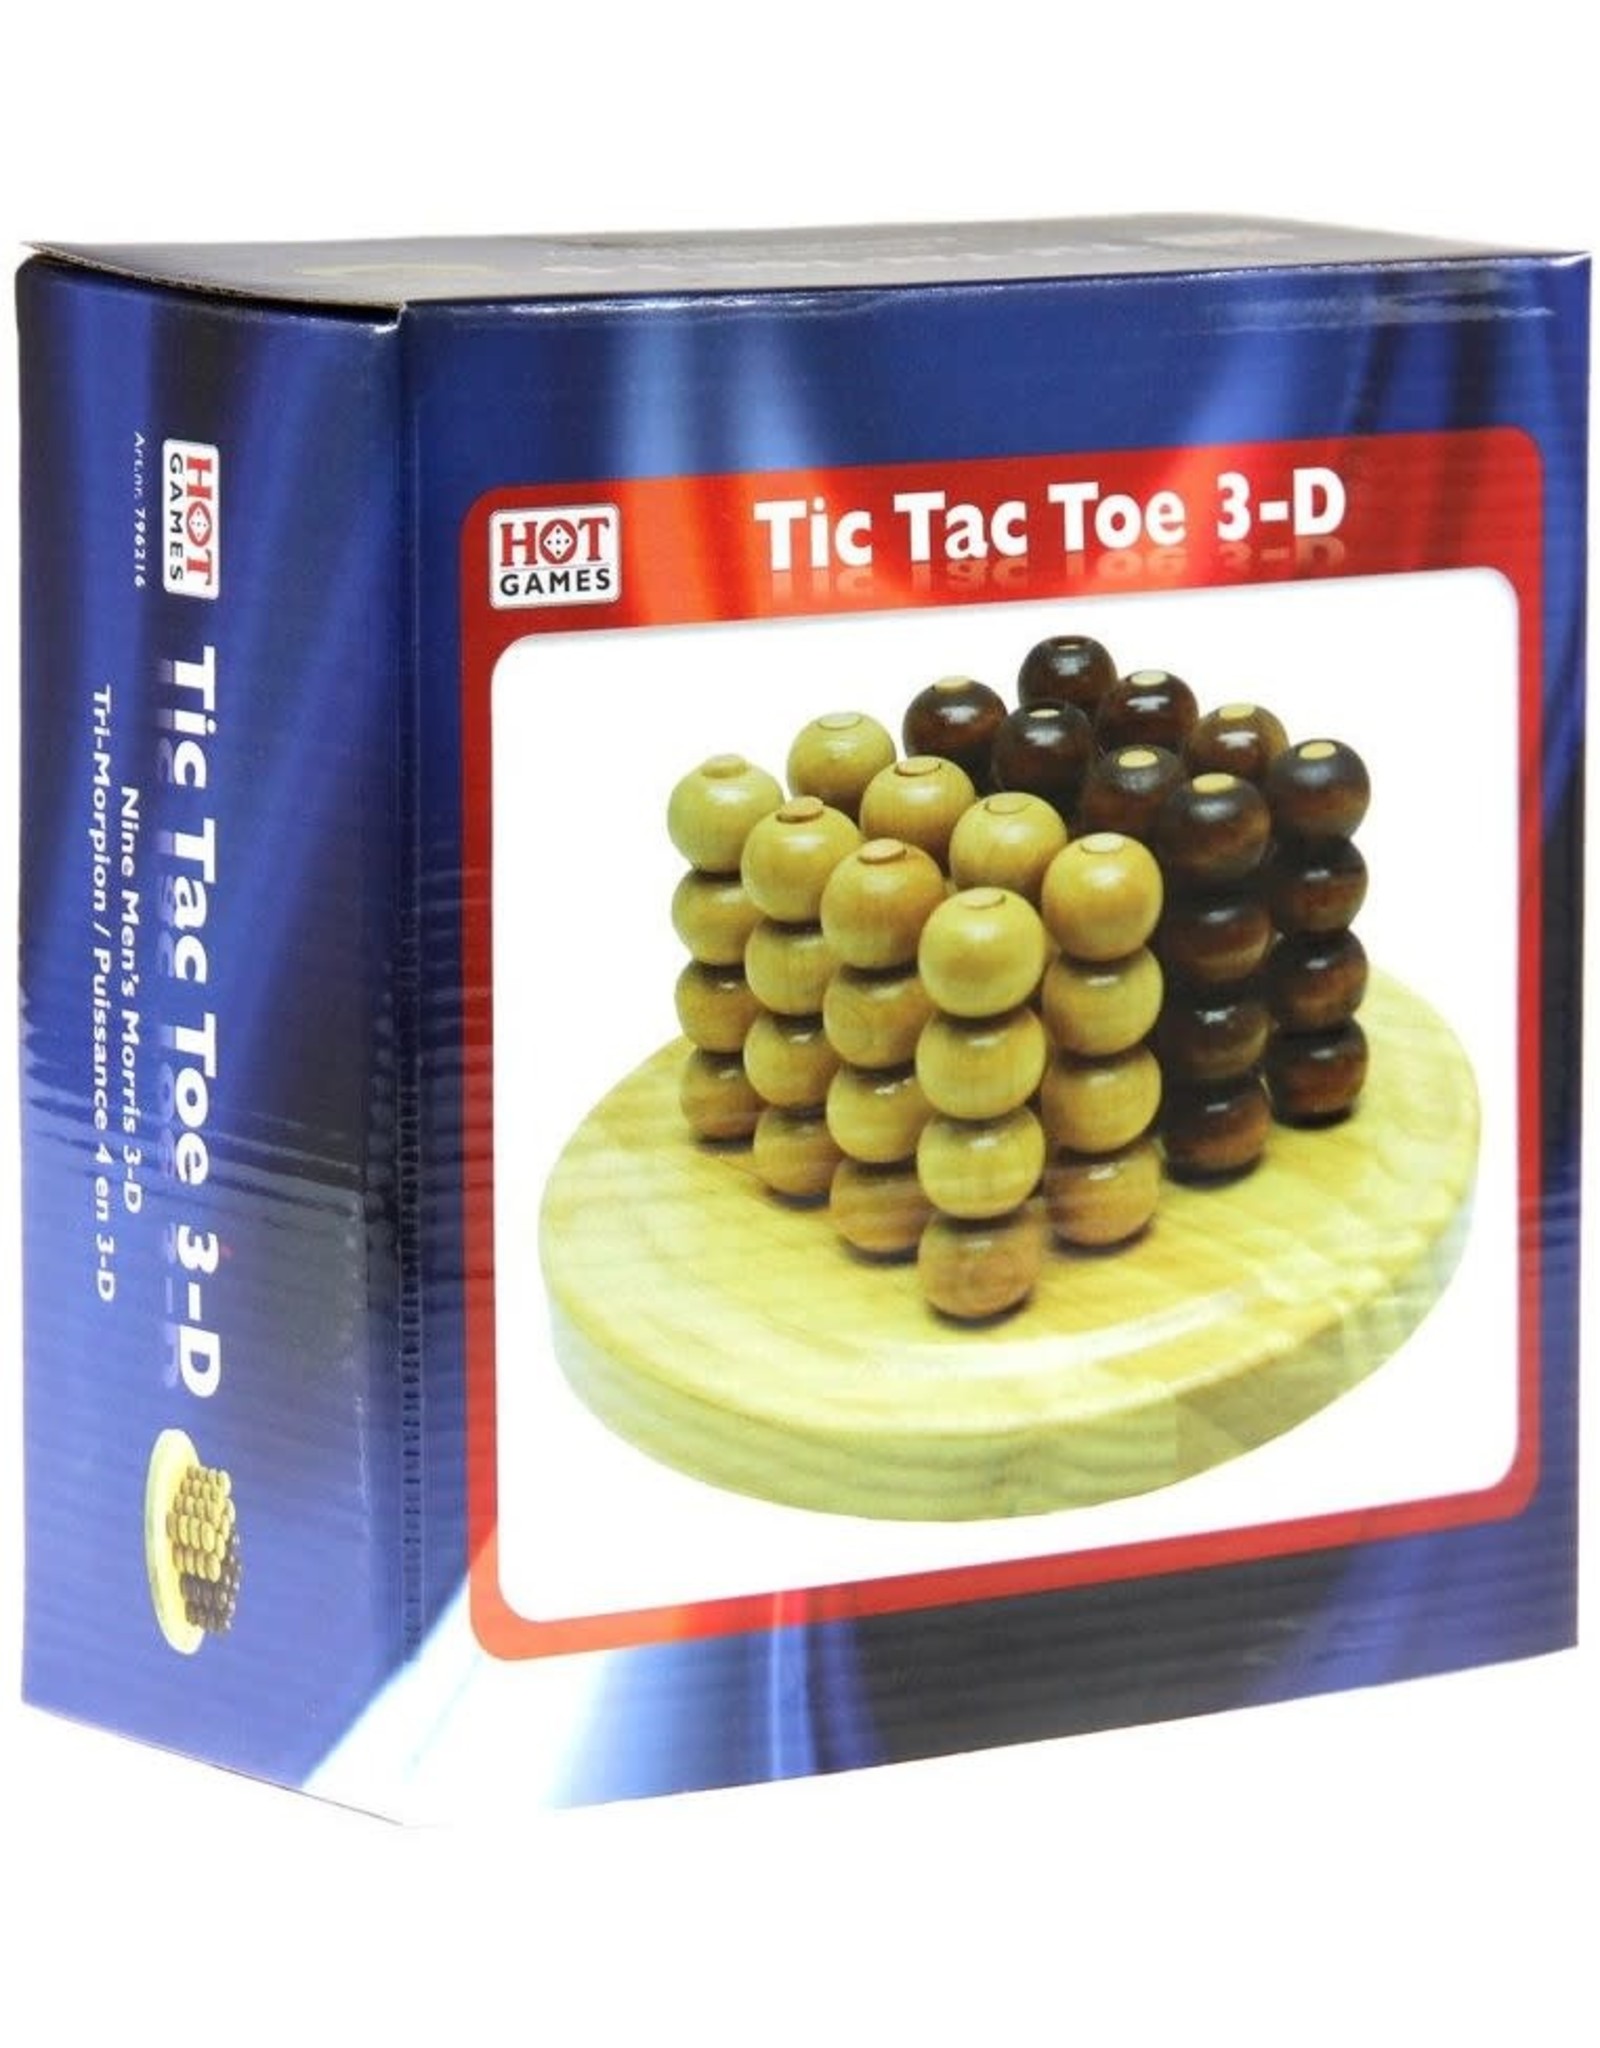 Tic Tac Toe 3-D